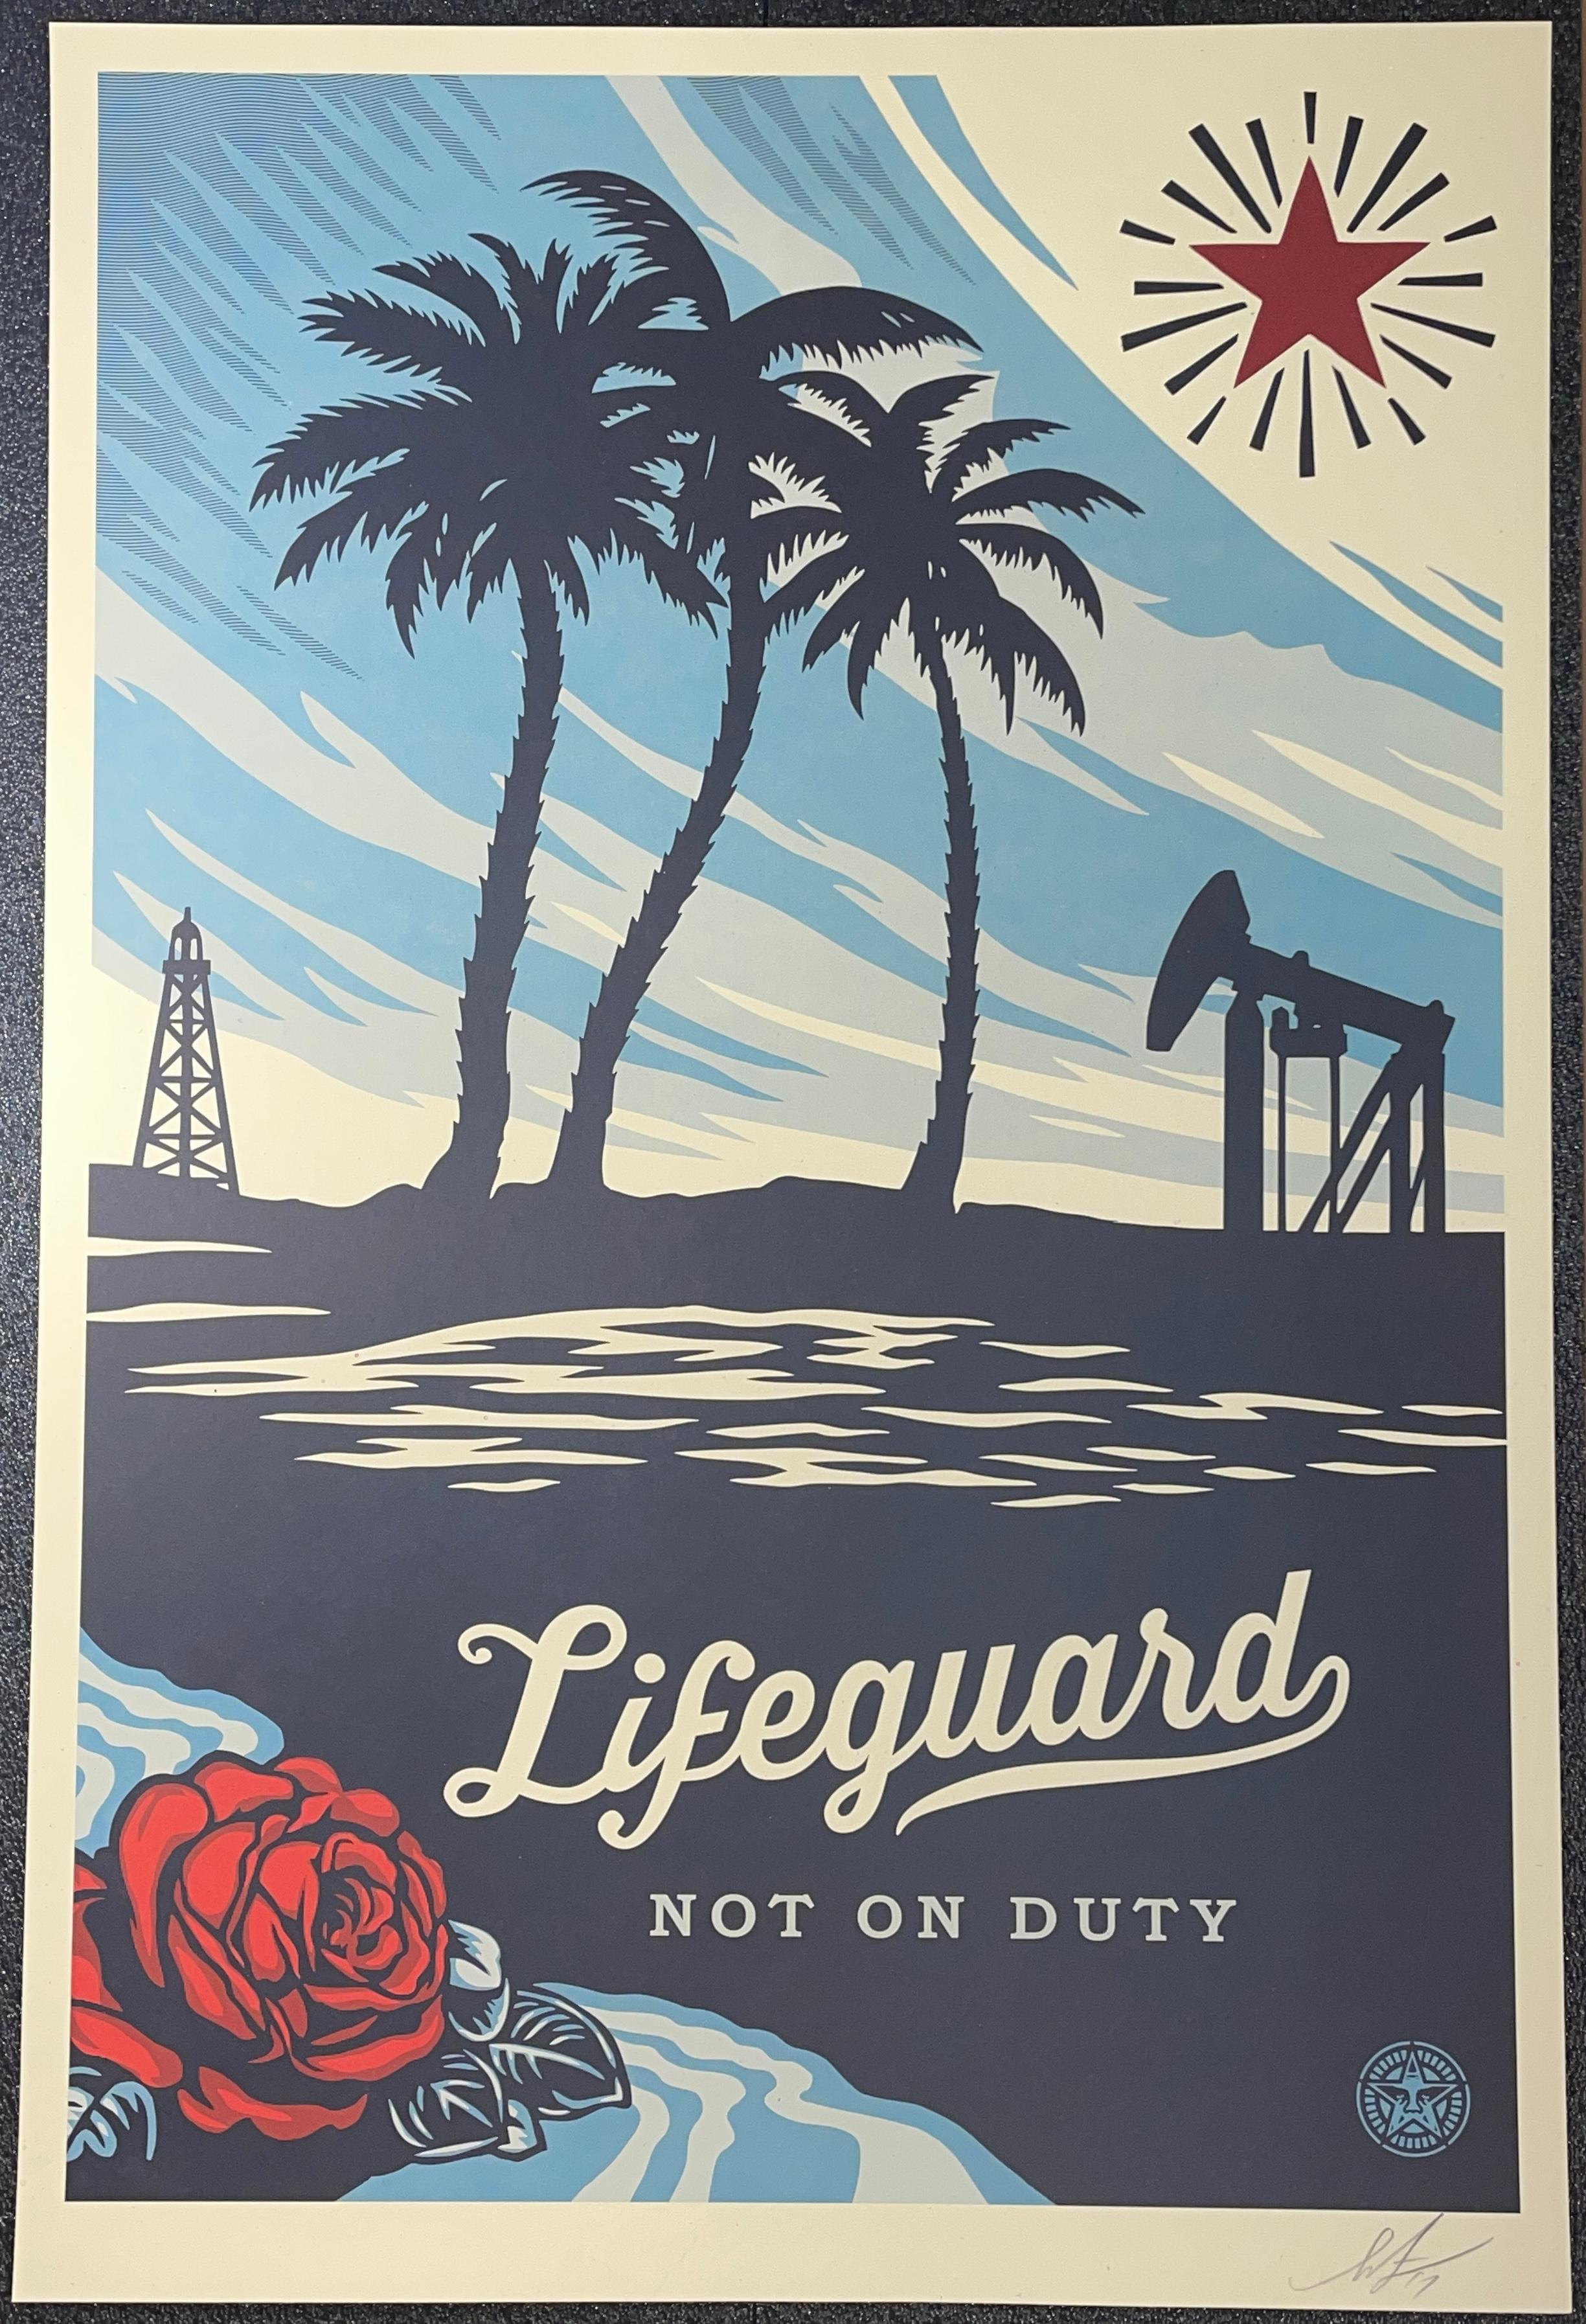 Shepard Fairey "Lifeguard Not On Duty" 